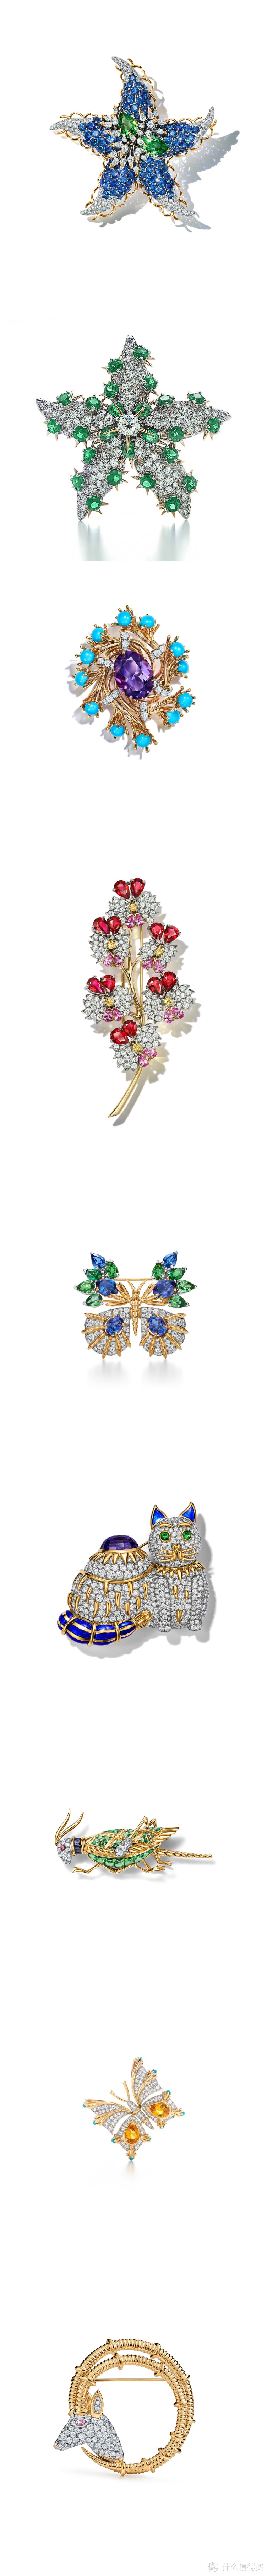 30多件高级珠宝璀璨发布，件件都震撼PLUS，一起来看蒂芙尼的珠宝魔法